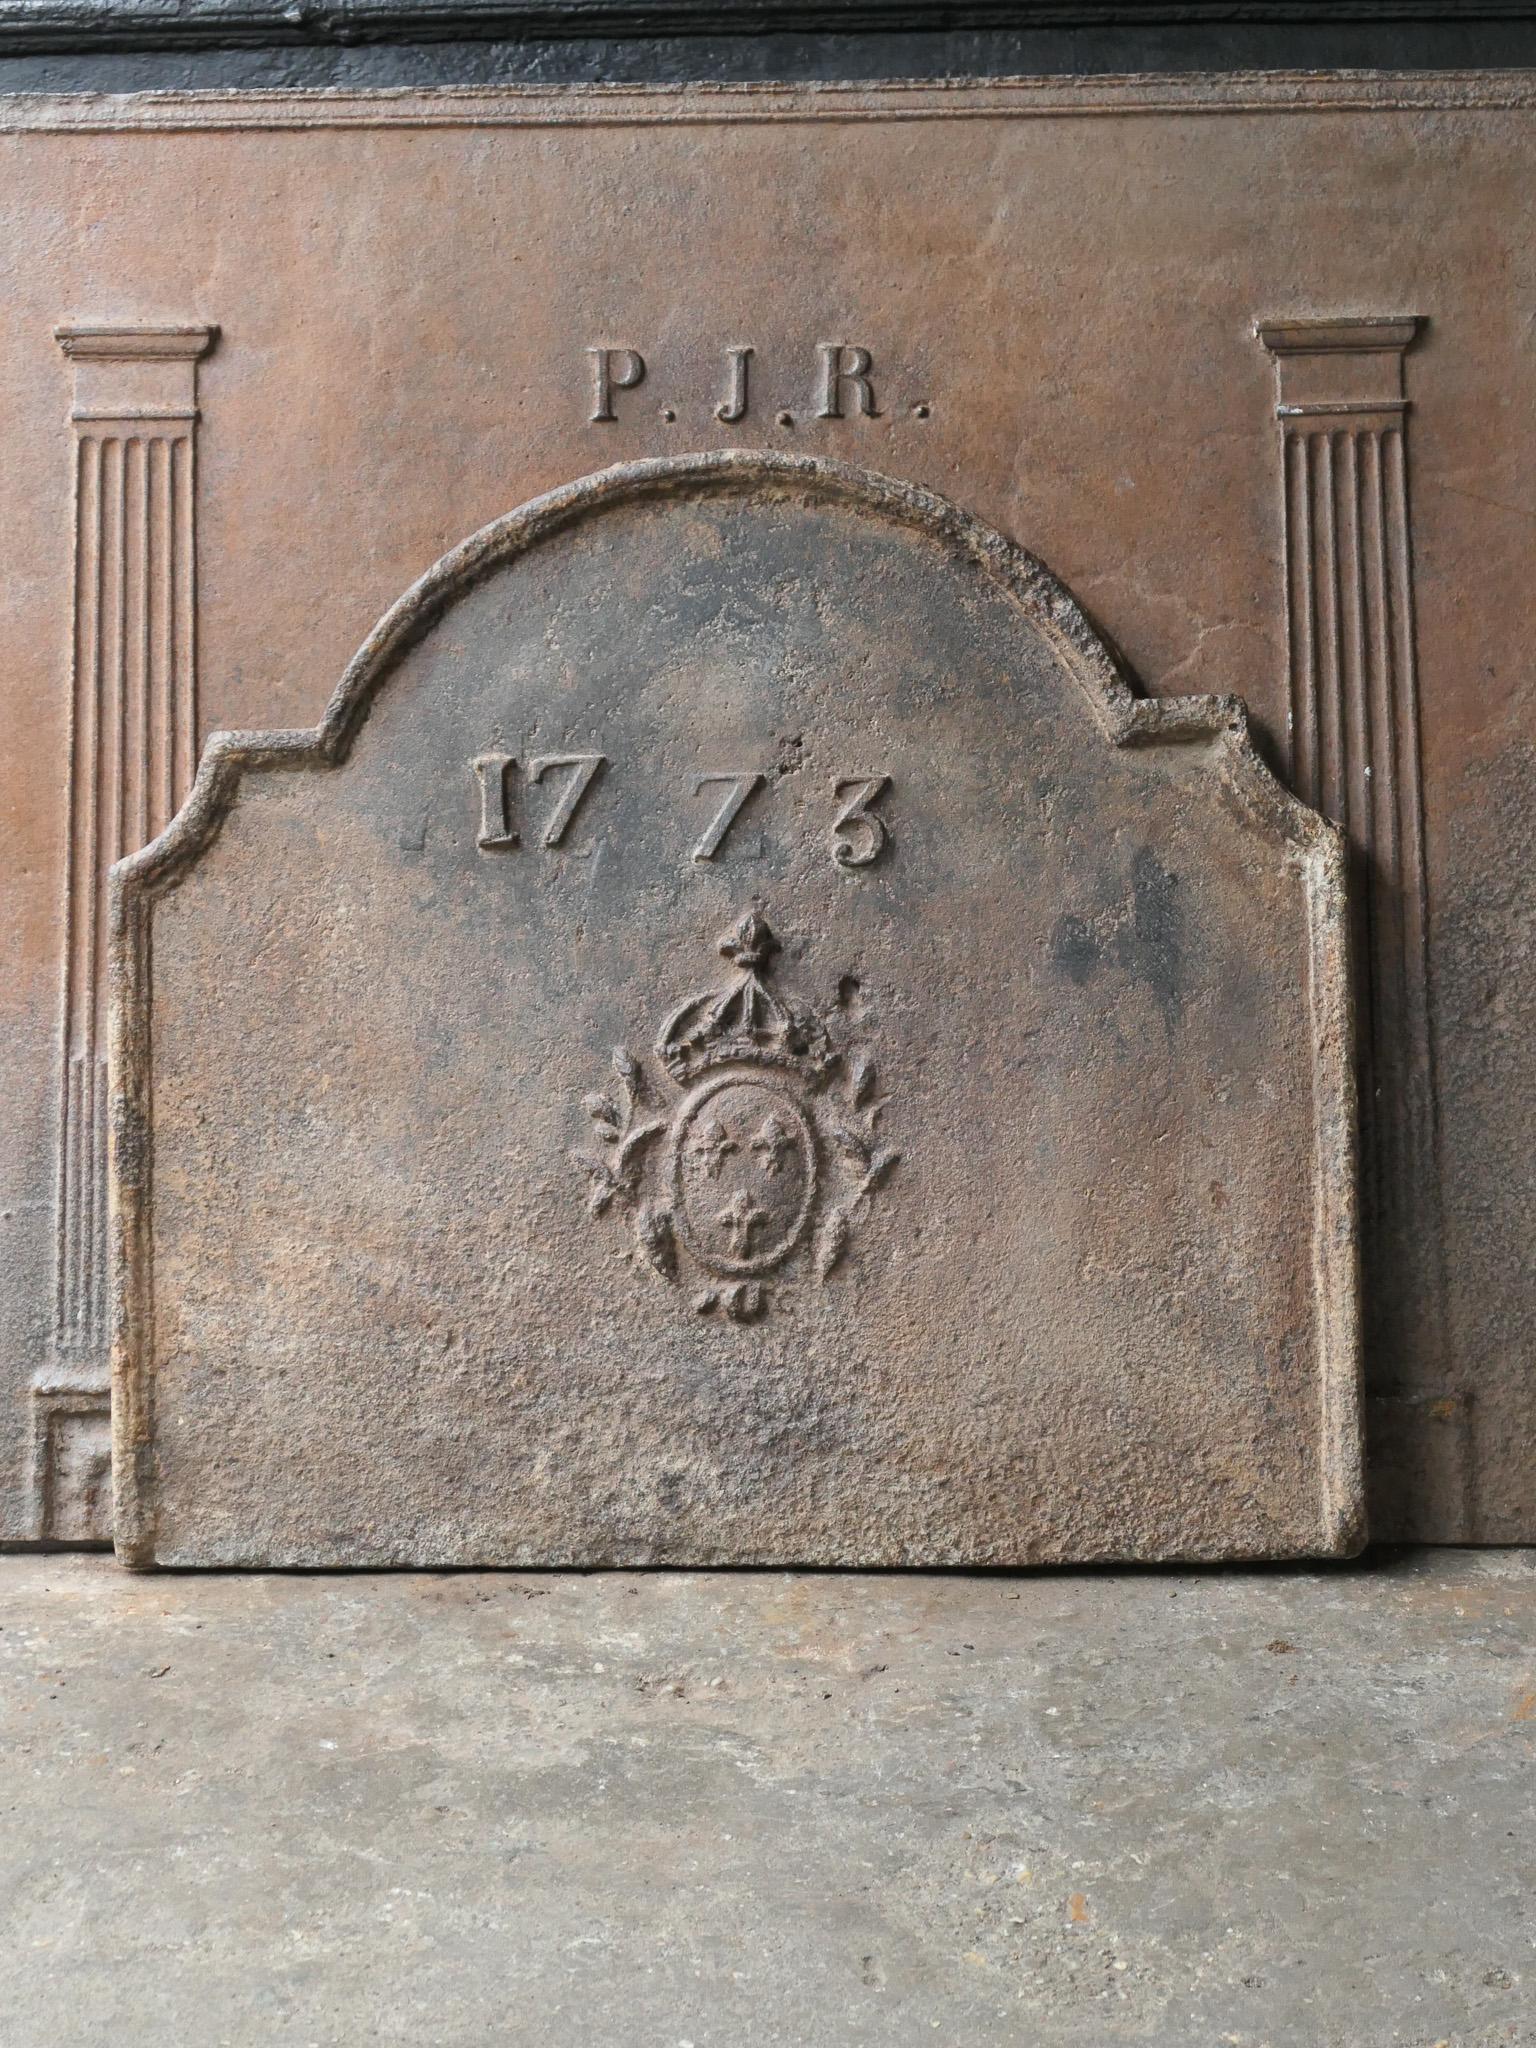 Schöner französischer Louis-XV-Kamin aus dem 18. Jahrhundert mit dem Wappen Frankreichs, datiert 1773. Dies ist das Wappen des Hauses Bourbon, eines ursprünglich französischen Königshauses, das sich zu einer bedeutenden Dynastie in Europa